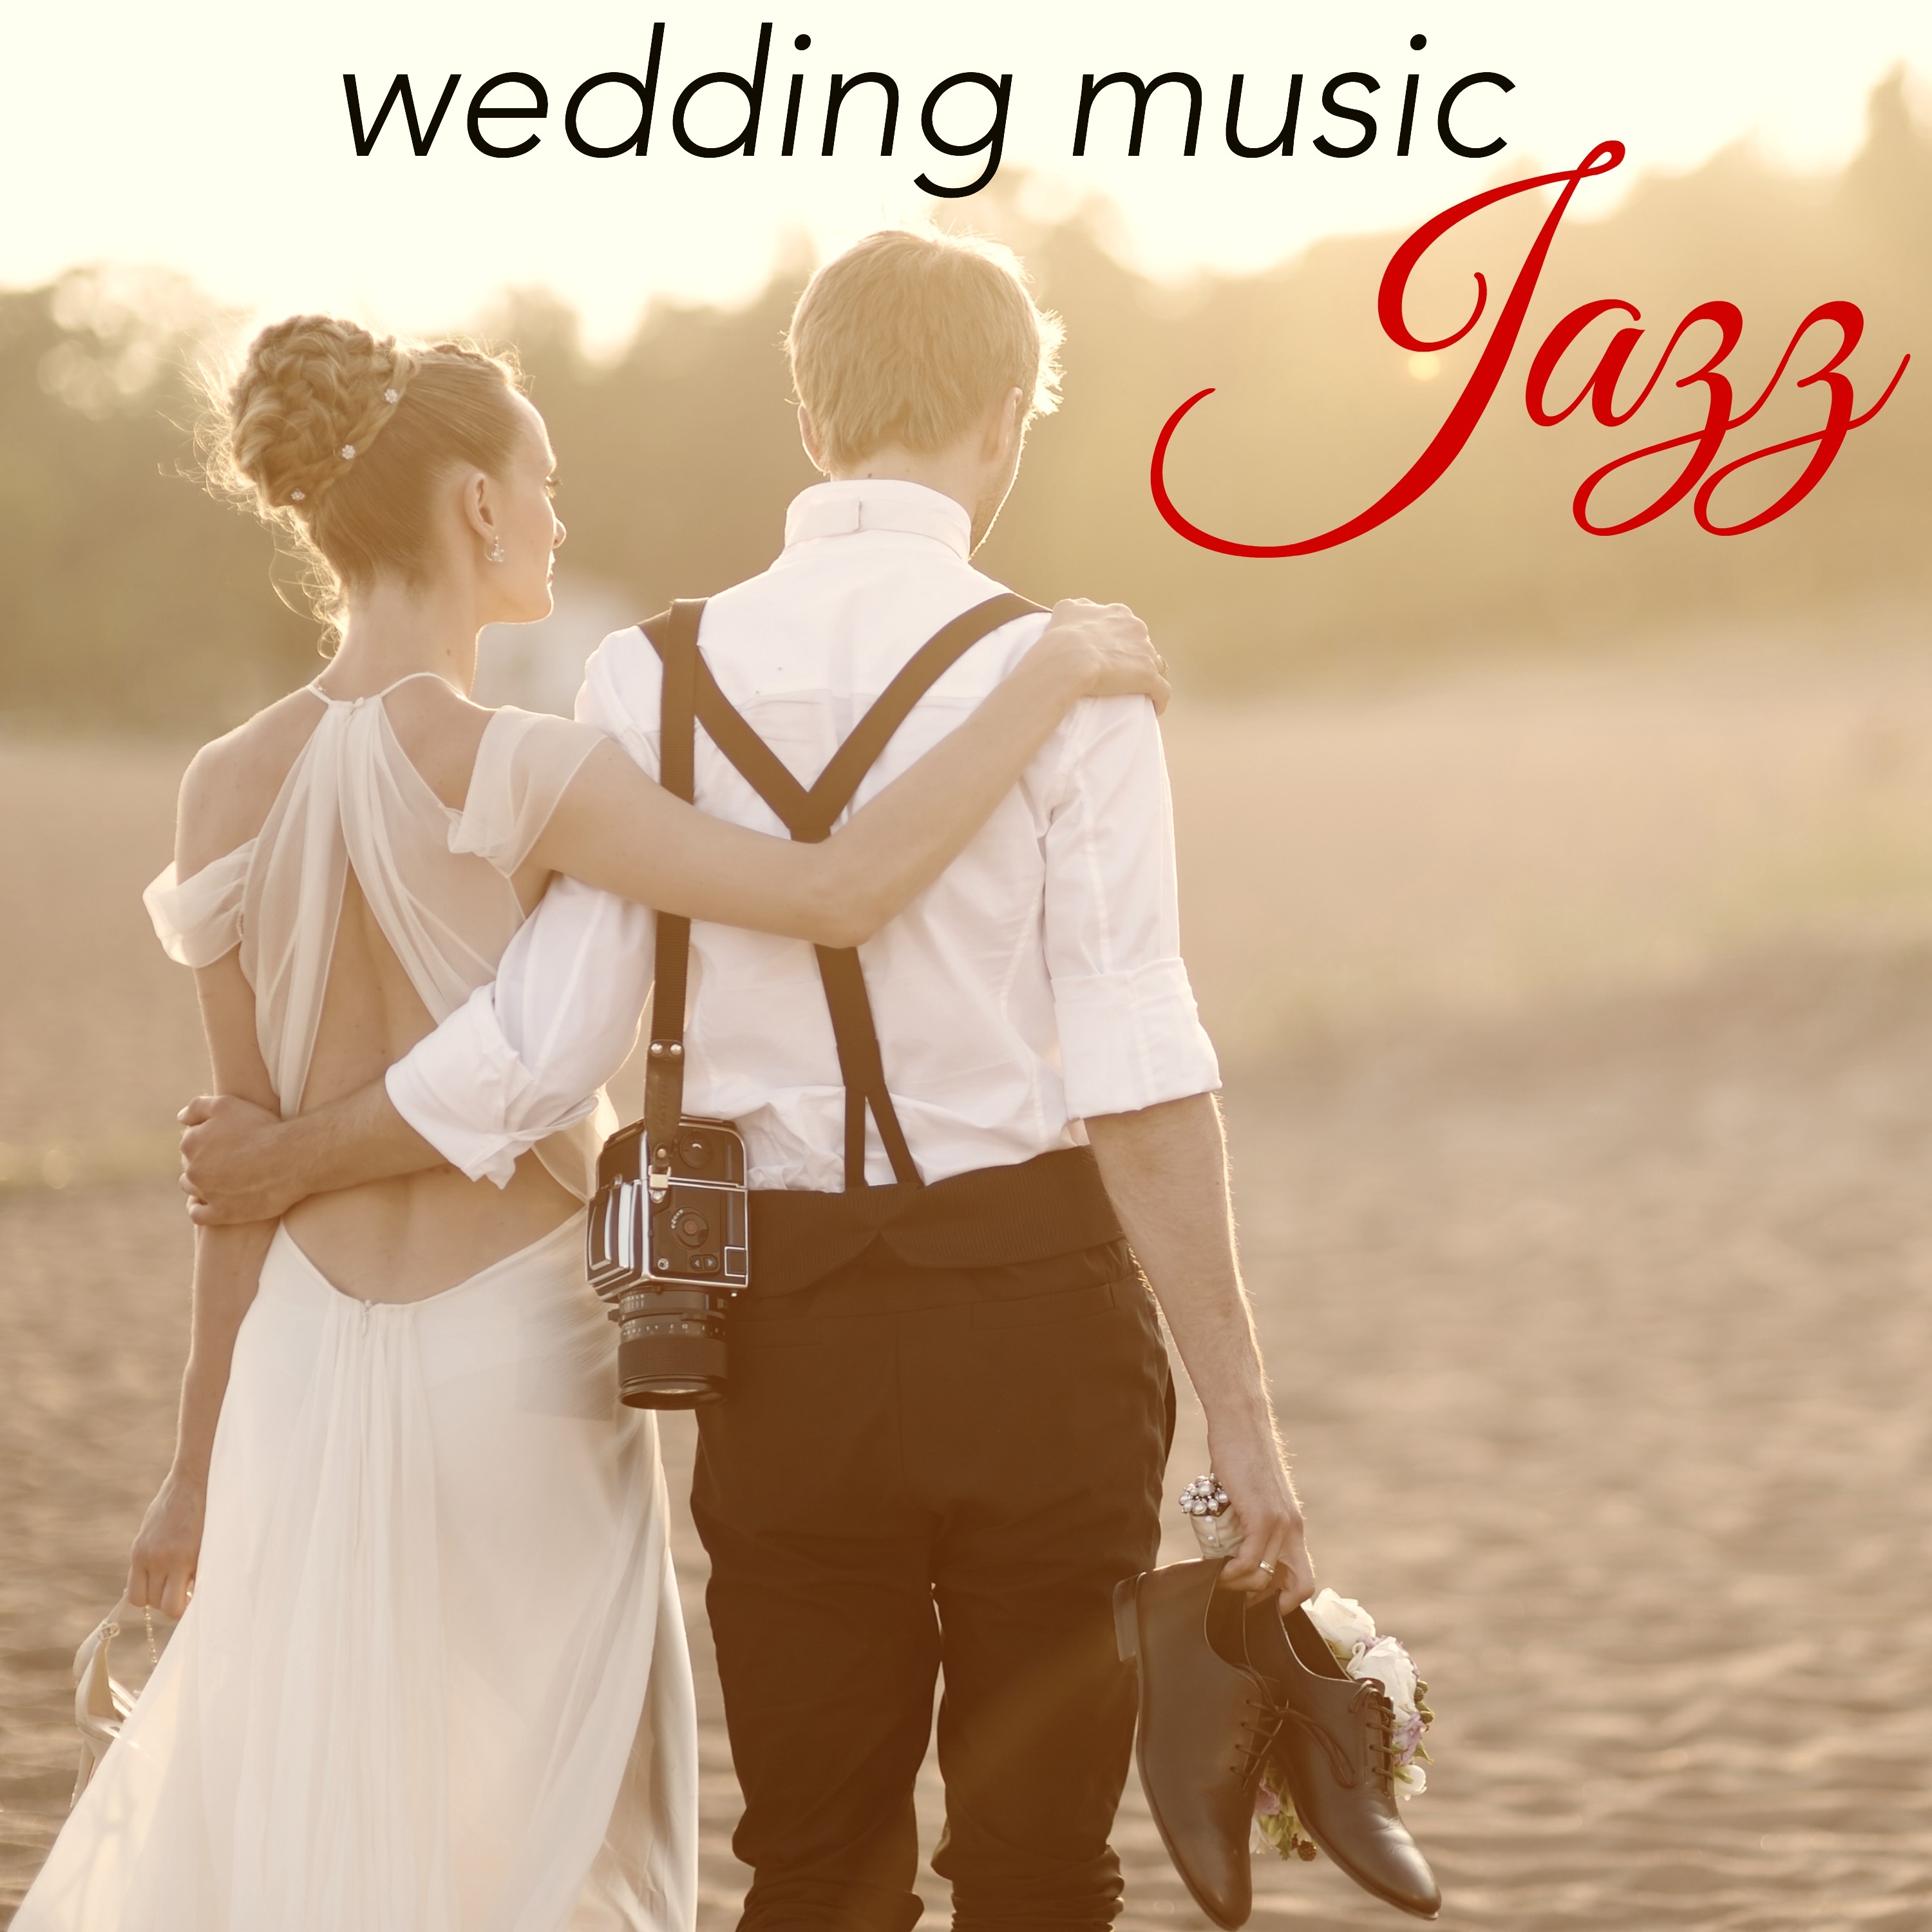 Sax - Jazz Wedding